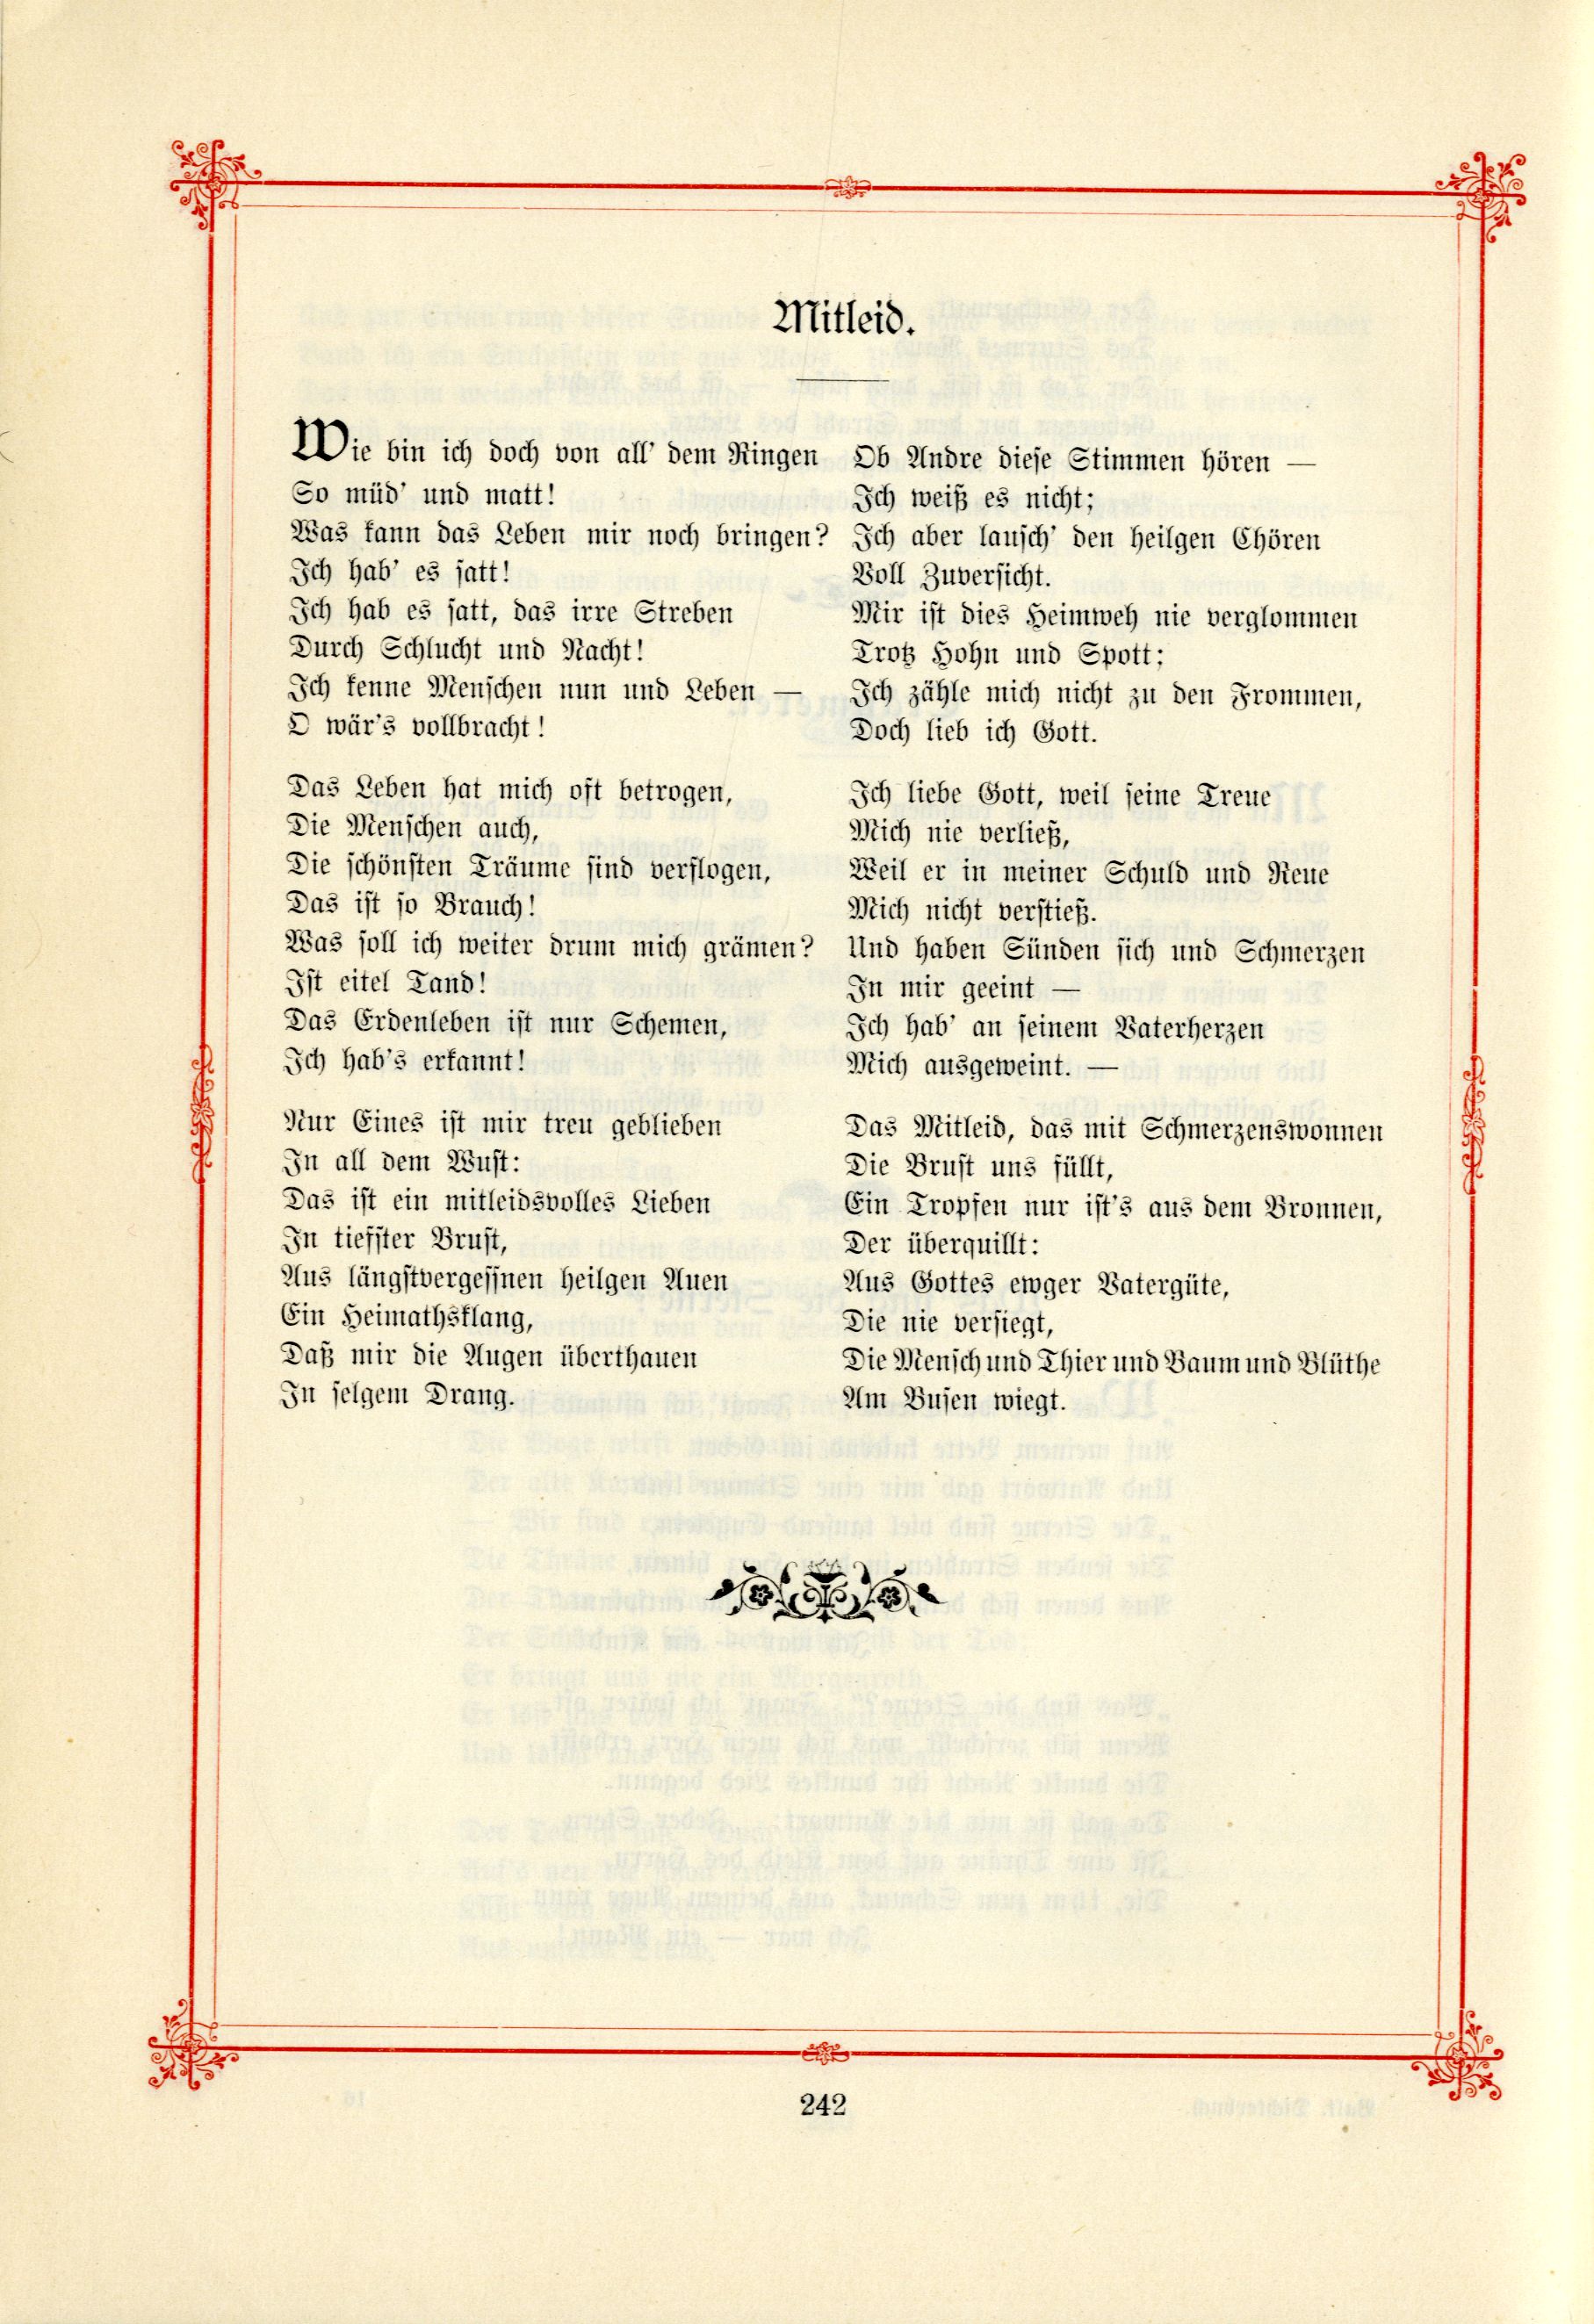 Das Baltische Dichterbuch (1895) | 288. (242) Main body of text